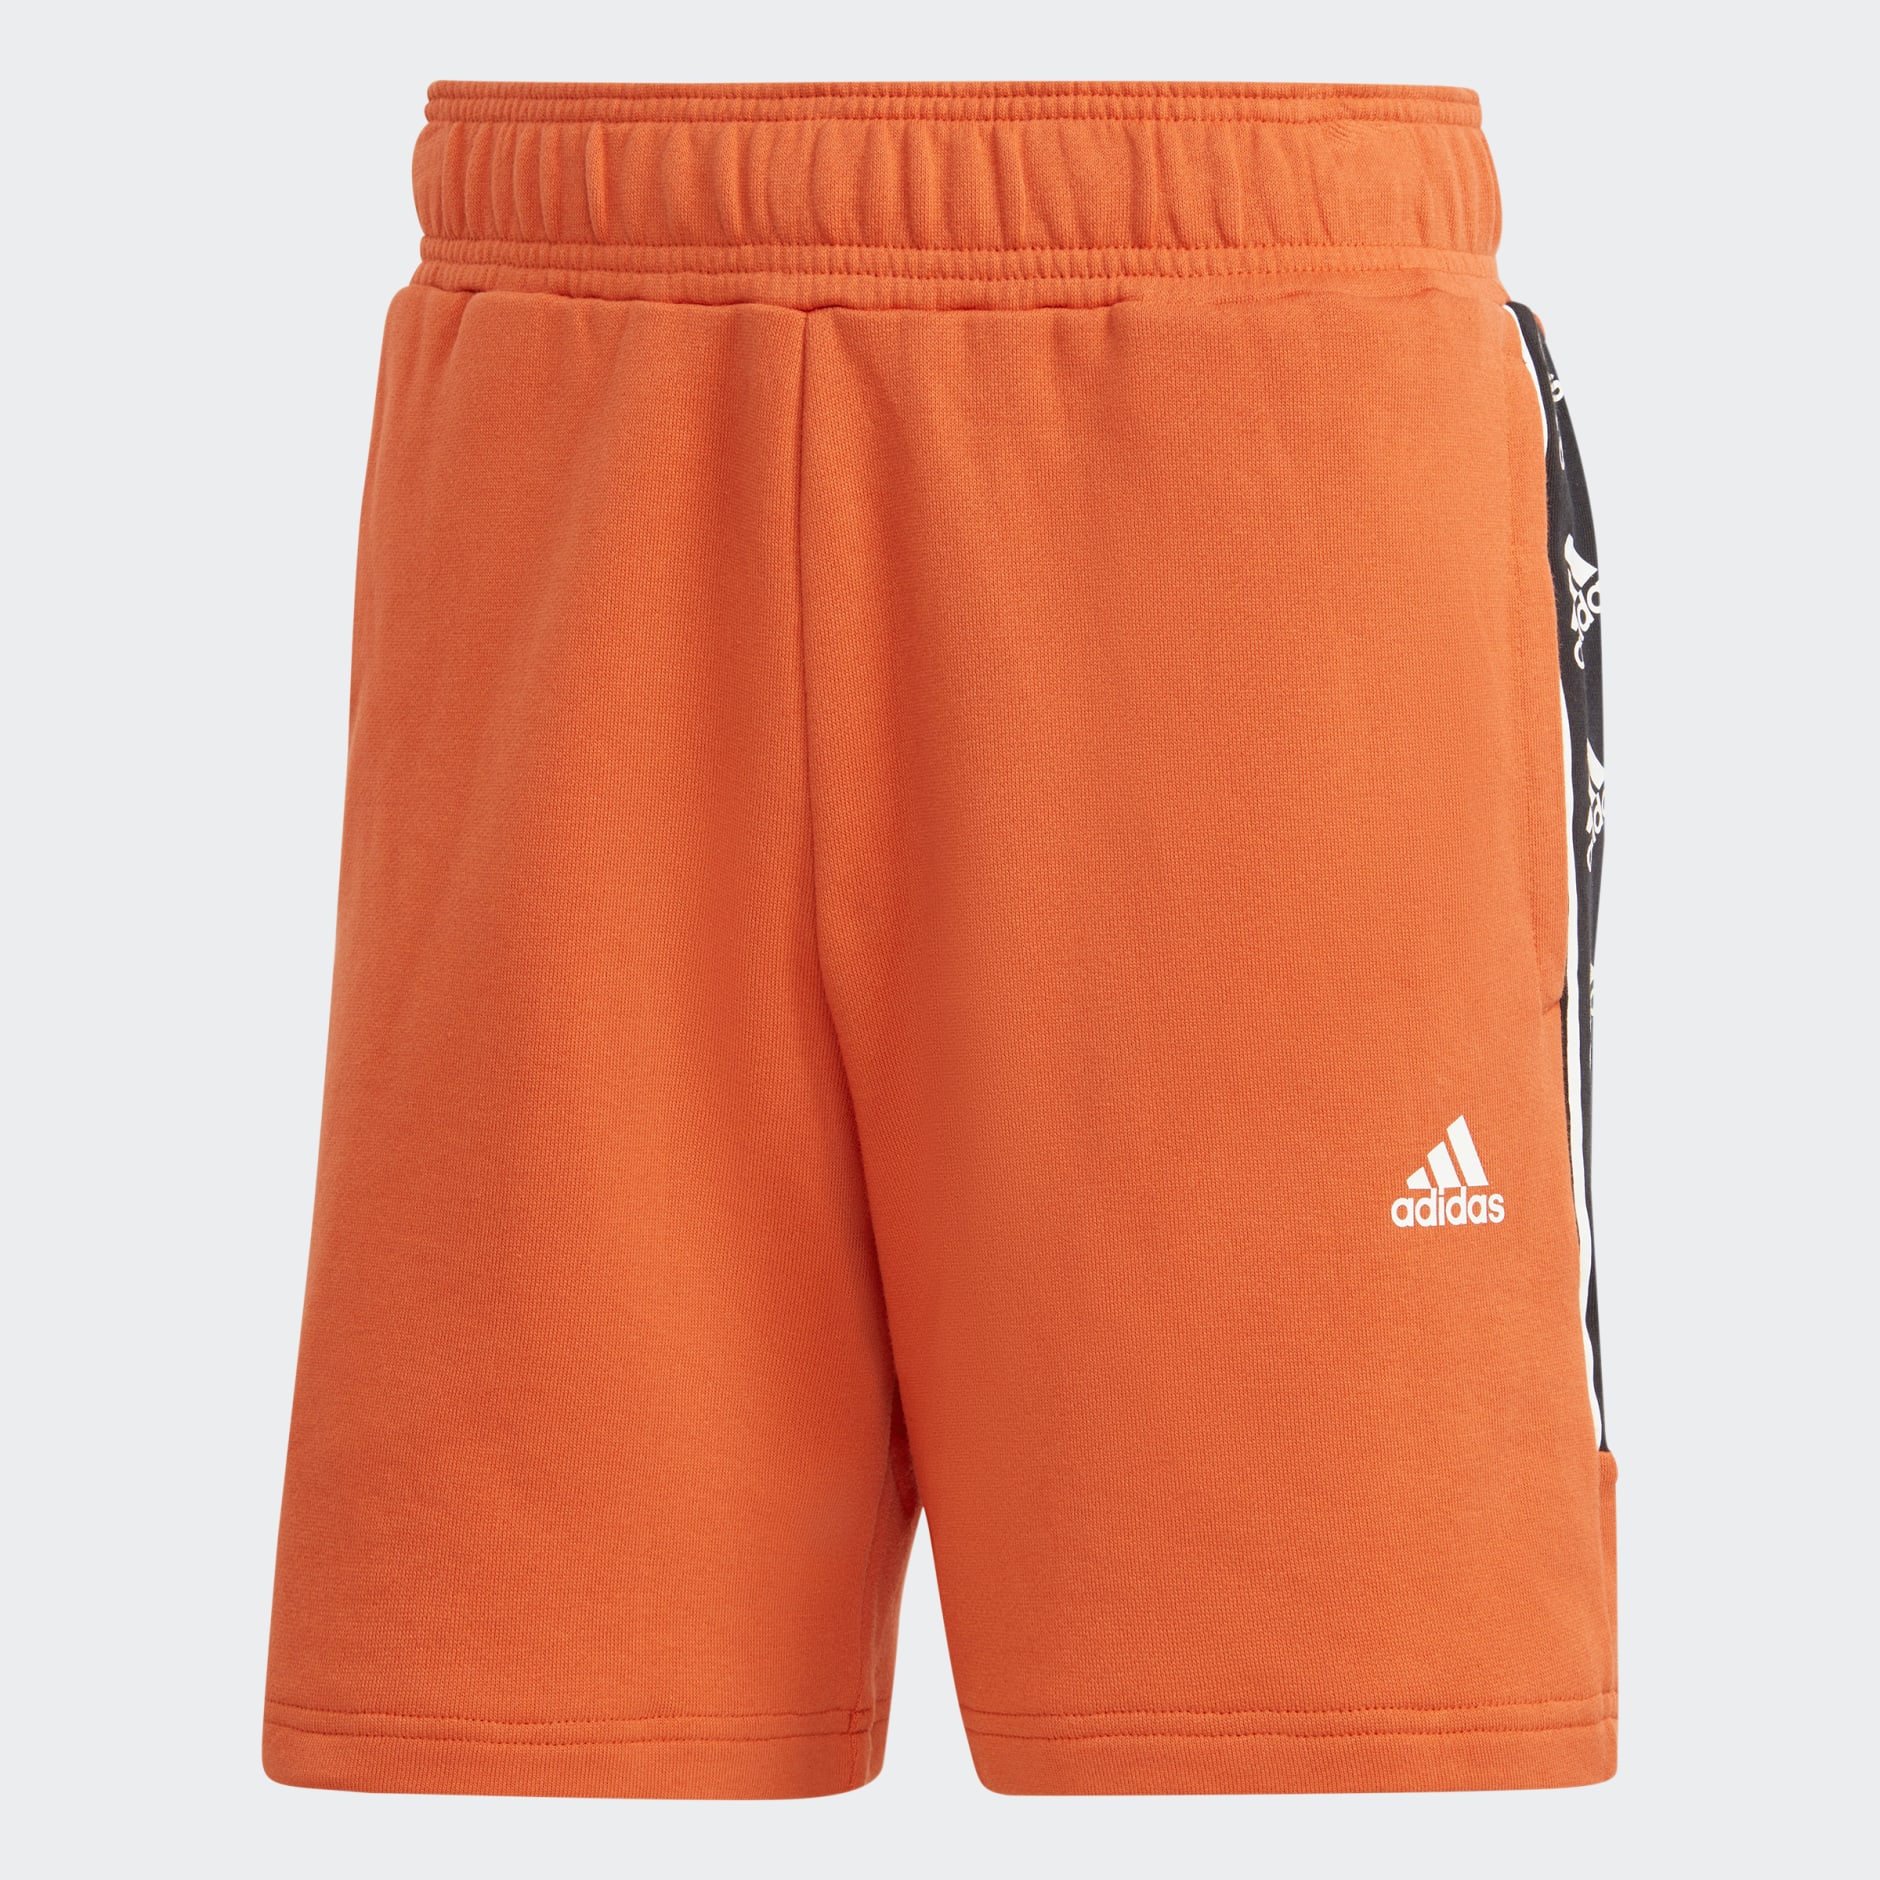 adidas Brandlove Shorts - Red | adidas SA